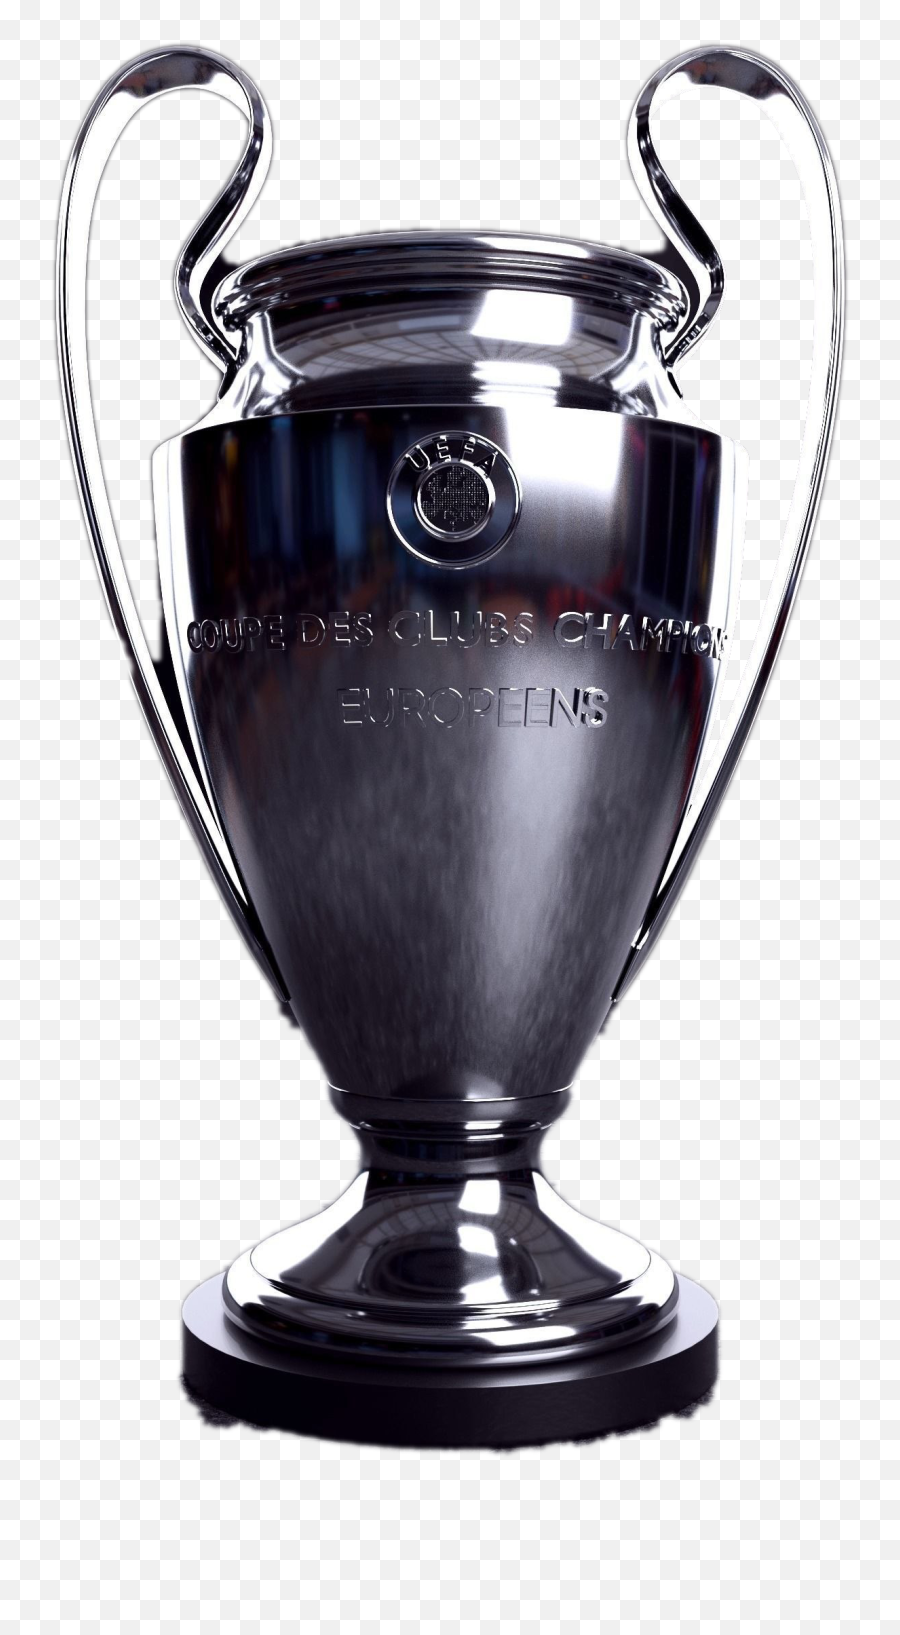 Uefa Champions League Trophy Png - European Champions League Trophy,Trophy Transparent Background